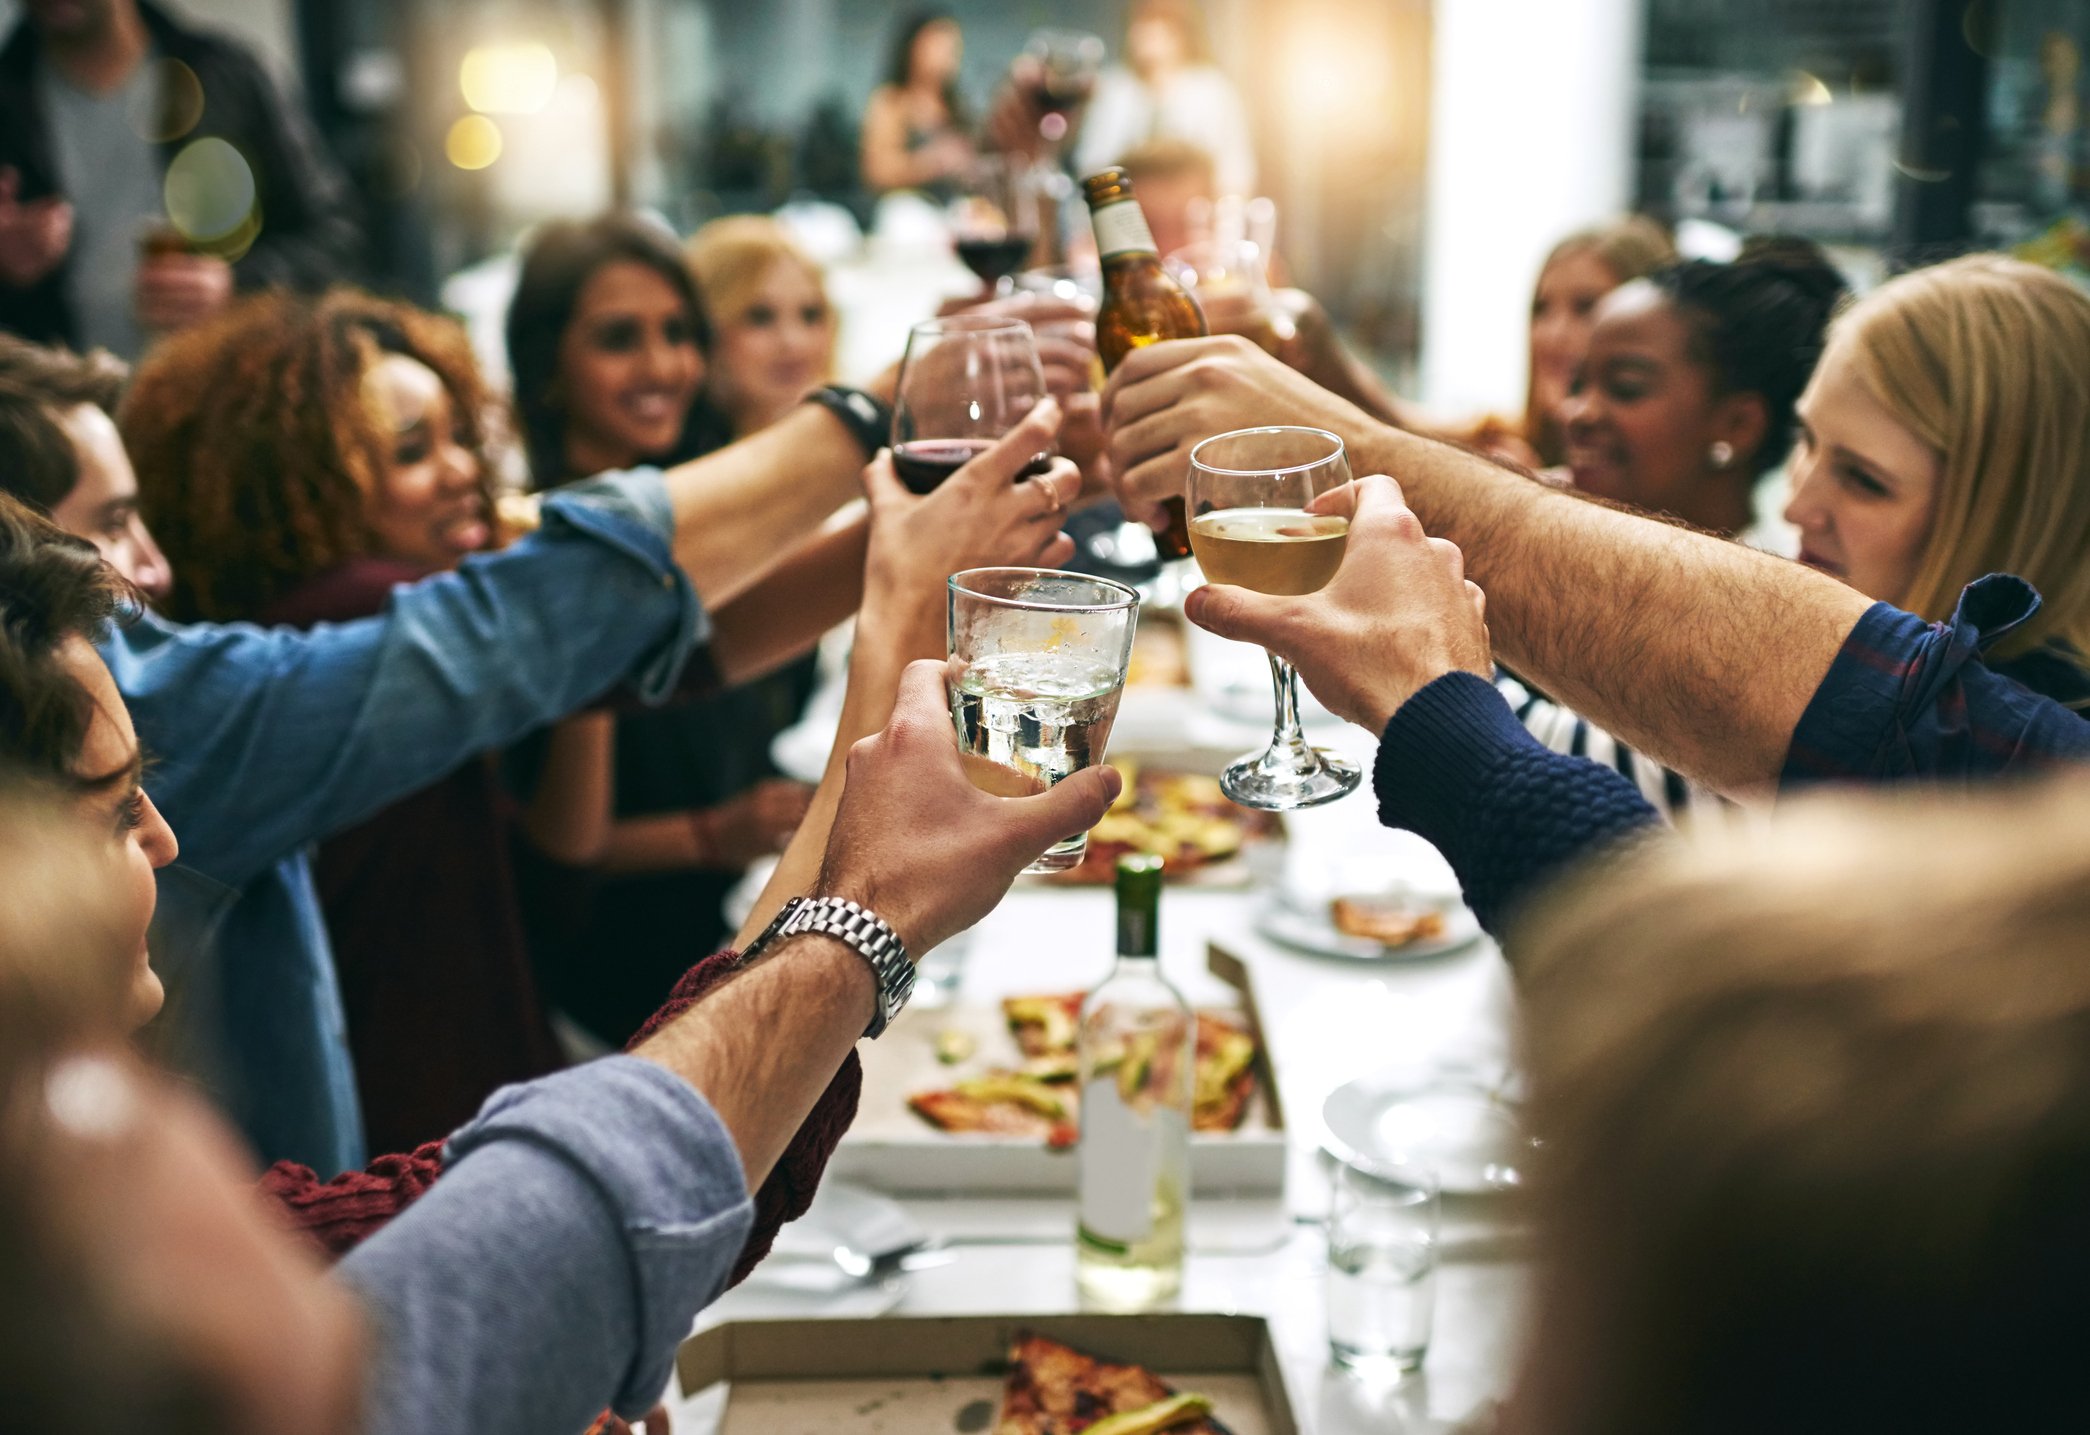 Restaurant Socializing Drinking